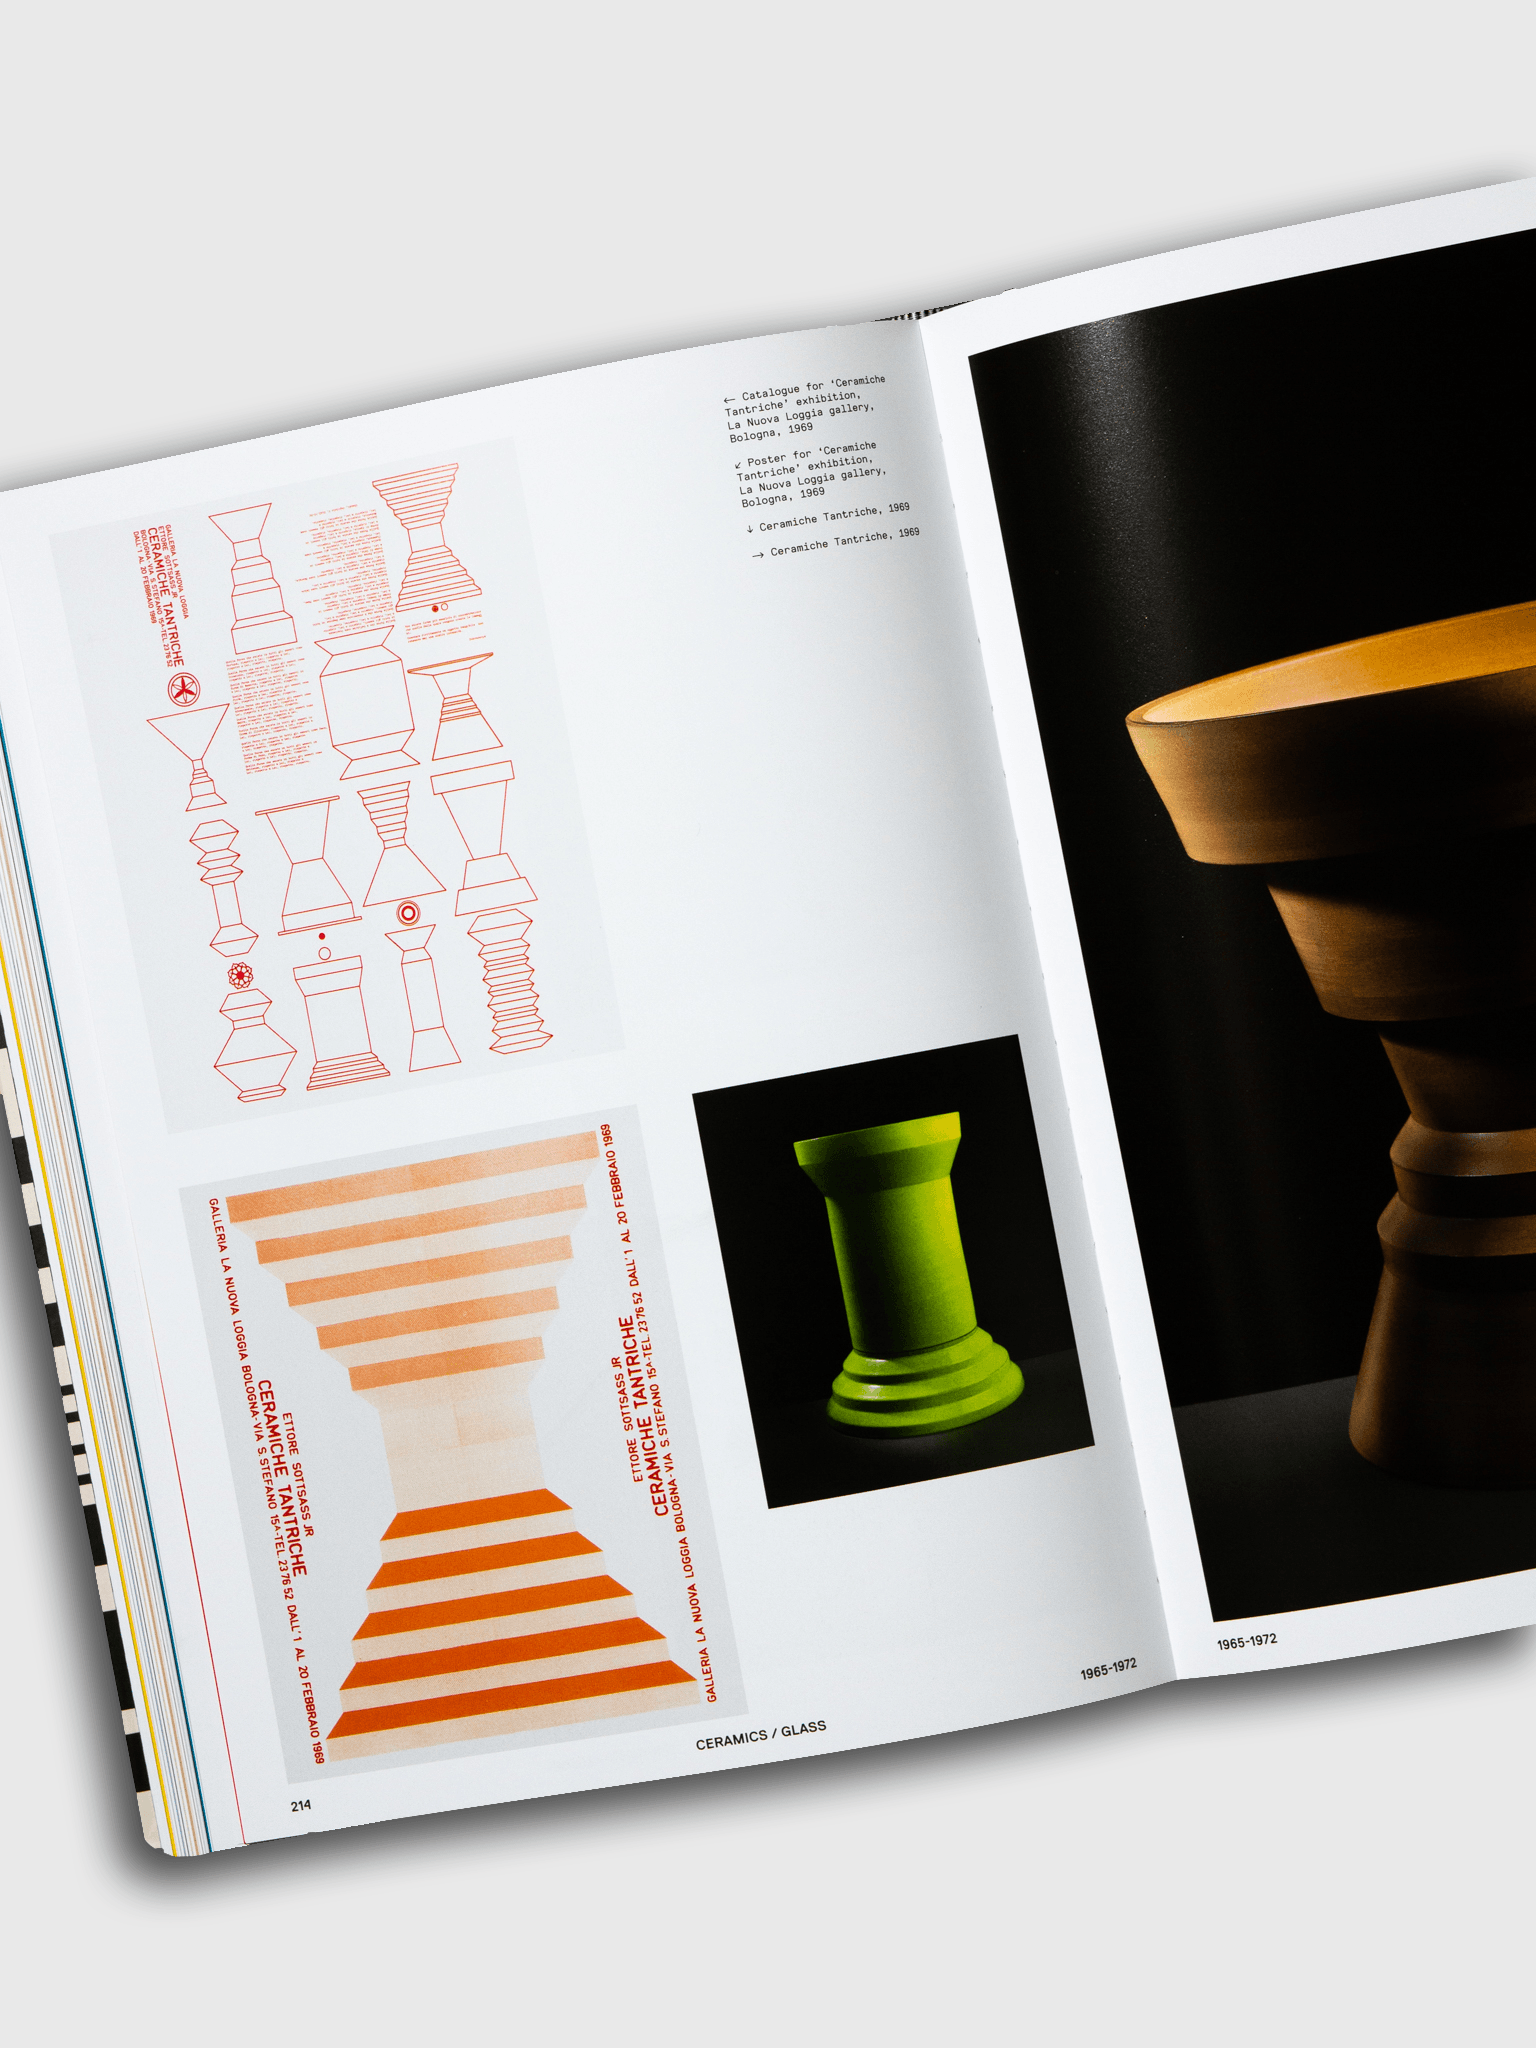 Ettore Sottsass Phaidon Design Book ISBN 9781838665739 stool